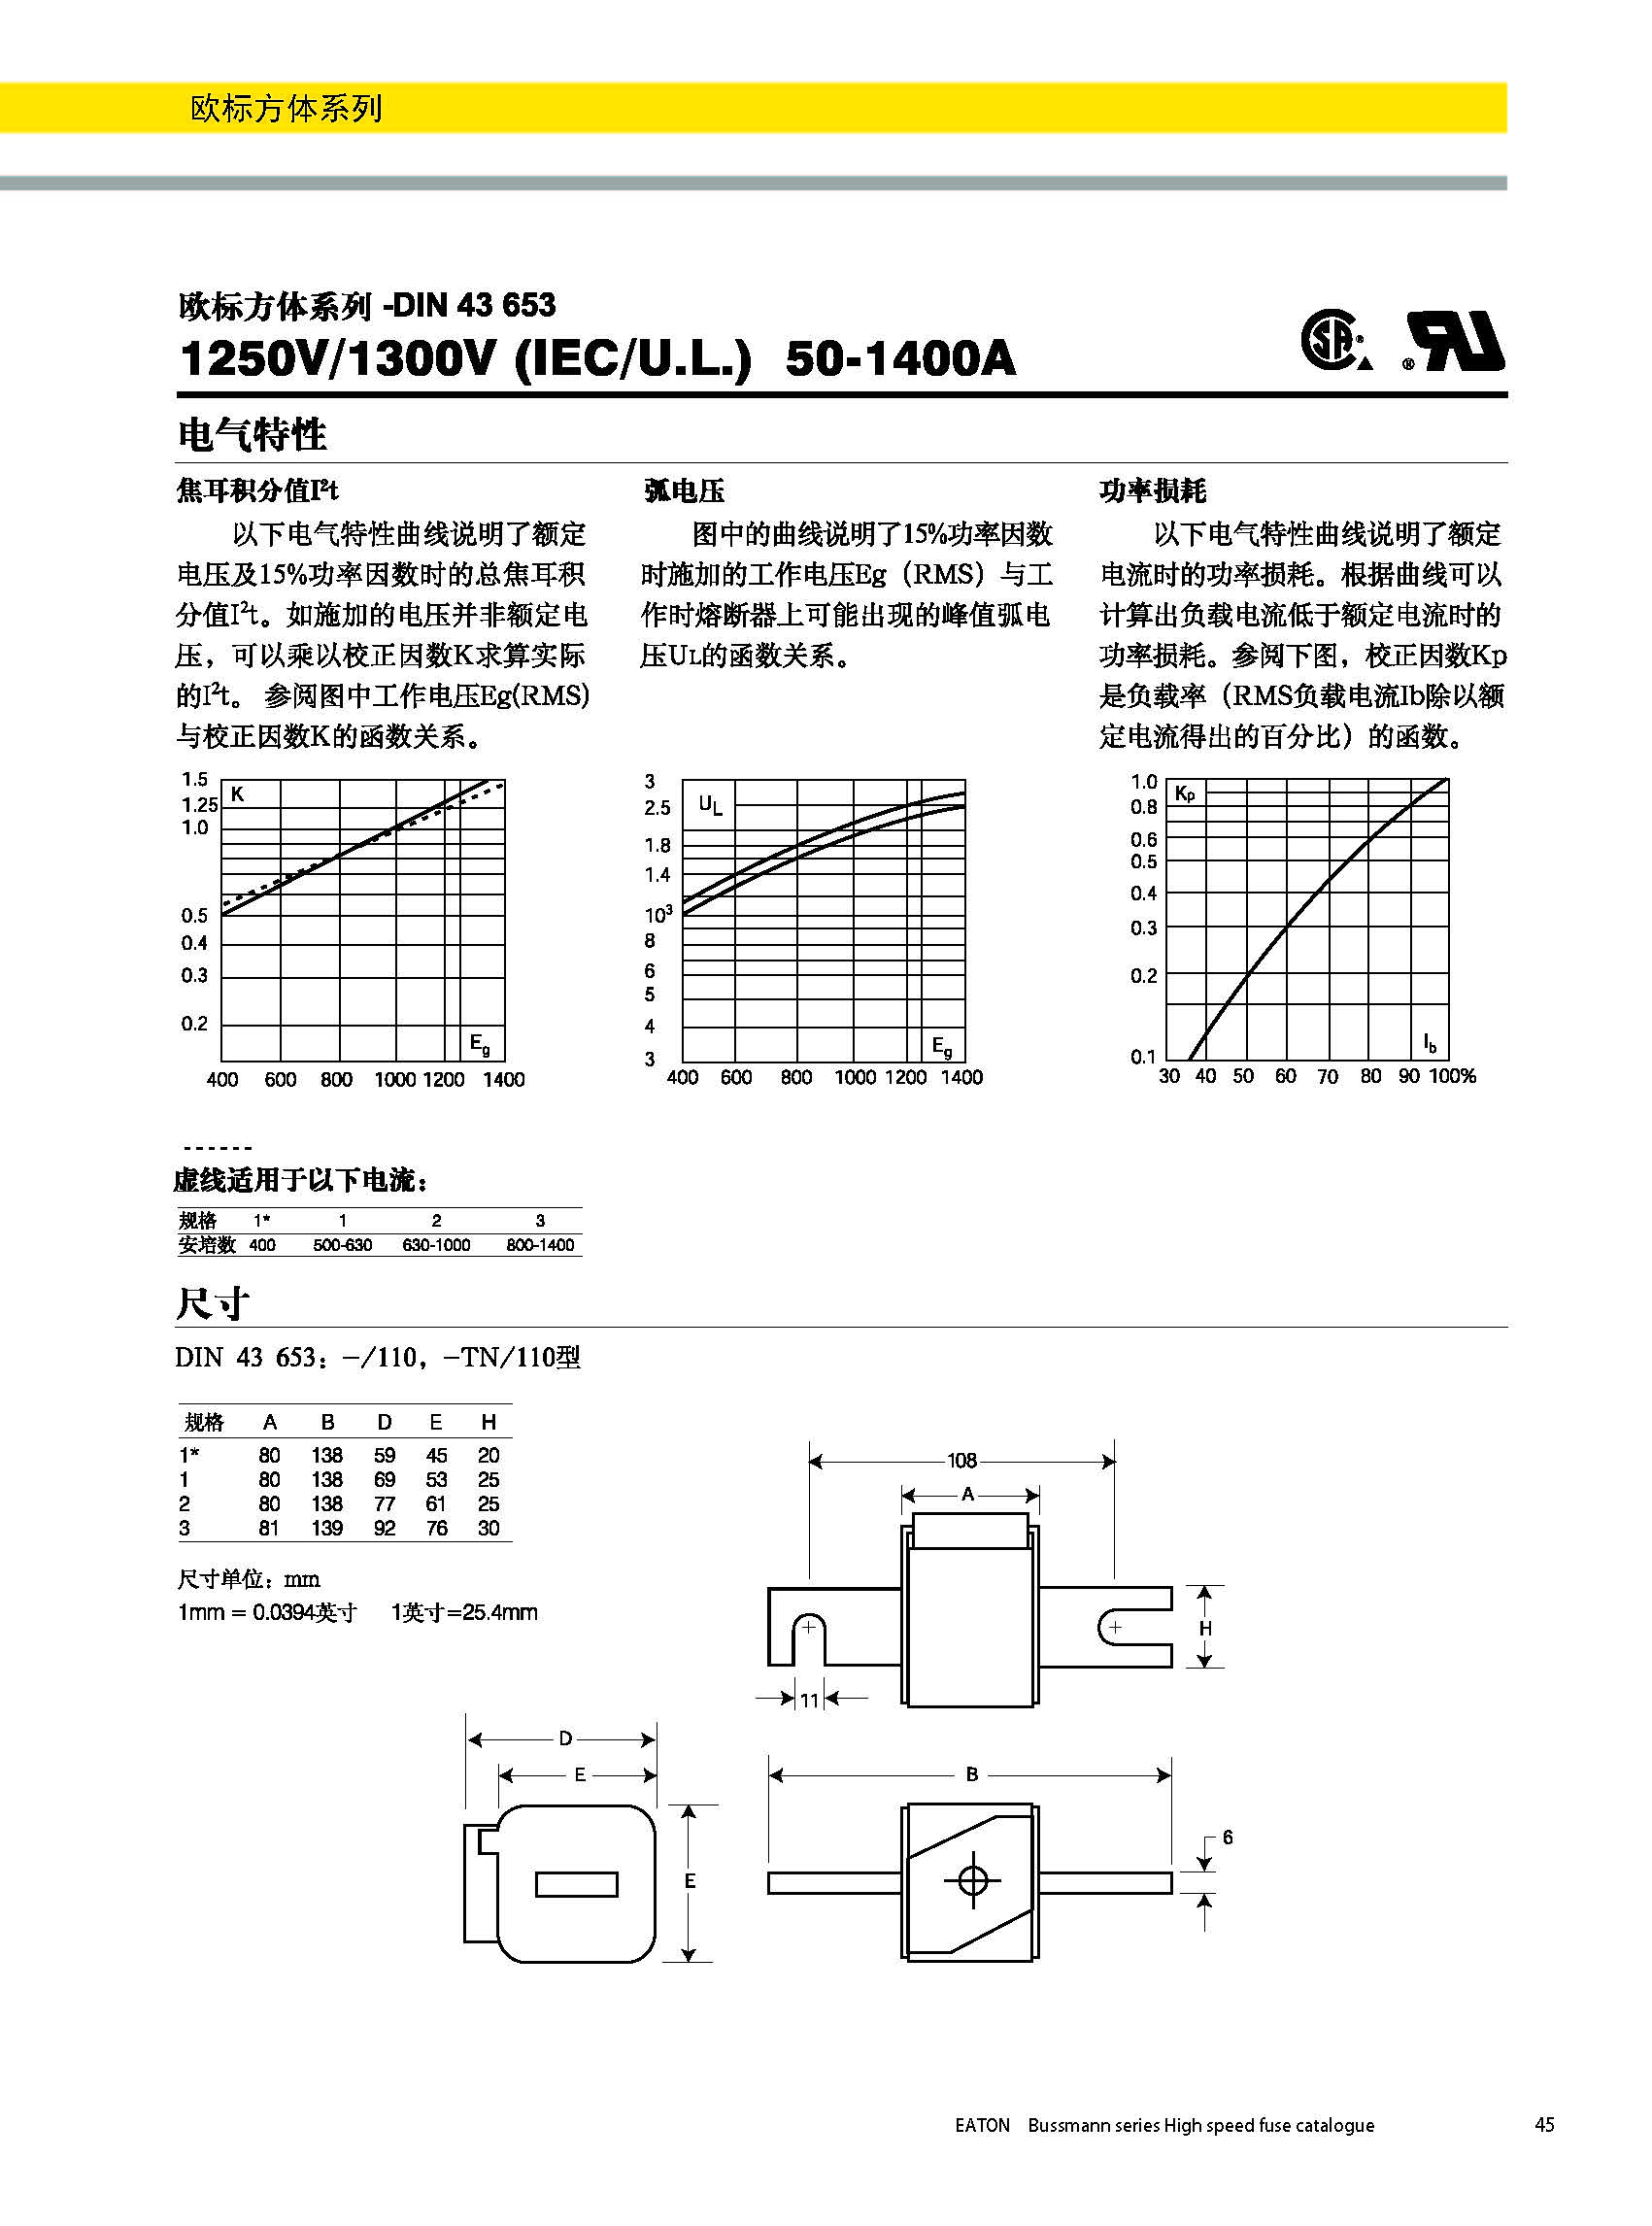 歐標方體DIN43653 電氣特性